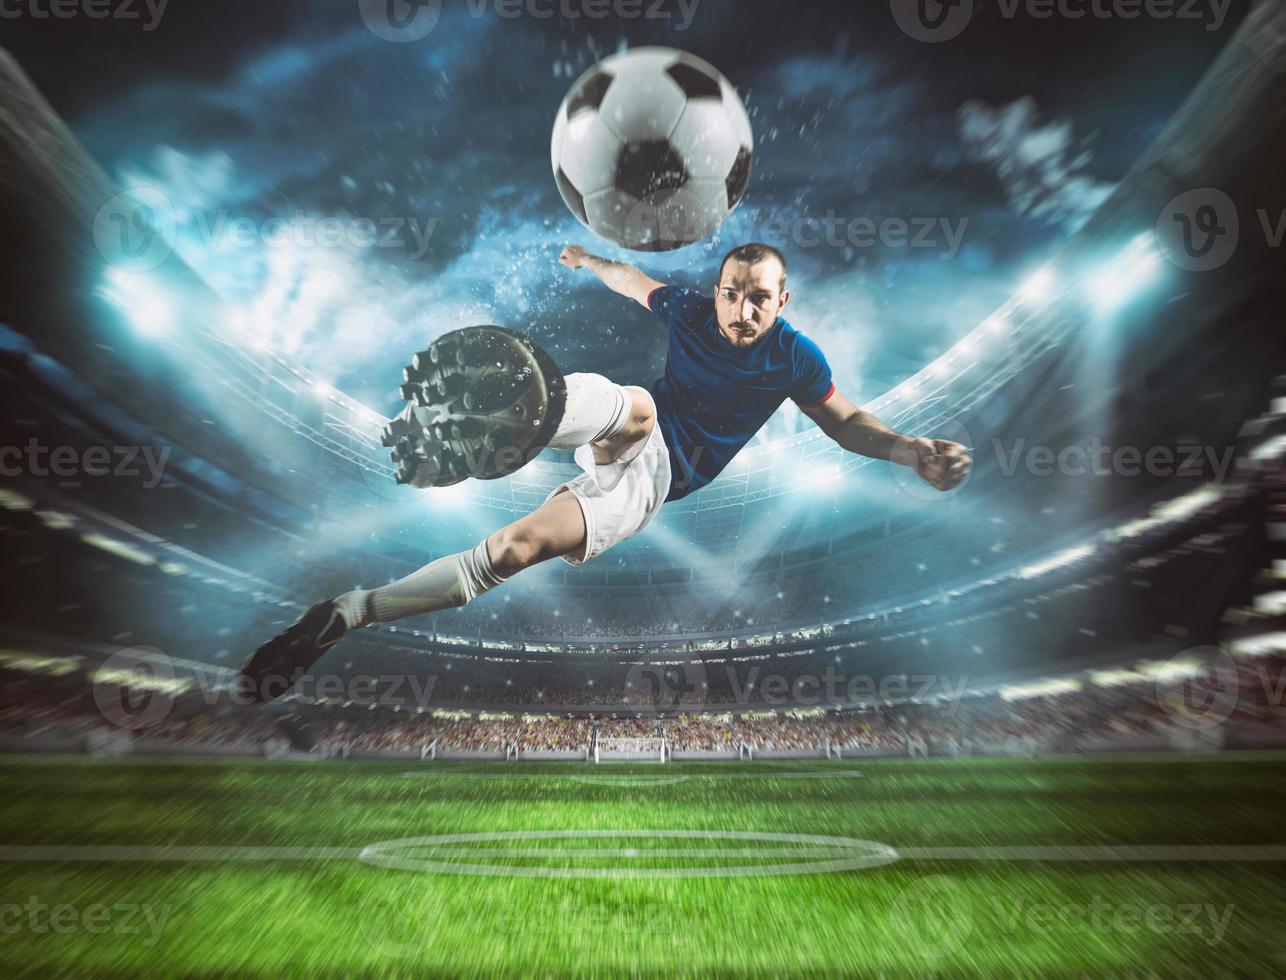 calcio attaccante colpi il palla con un acrobatico calcio nel il aria a il stadio a notte incontro foto